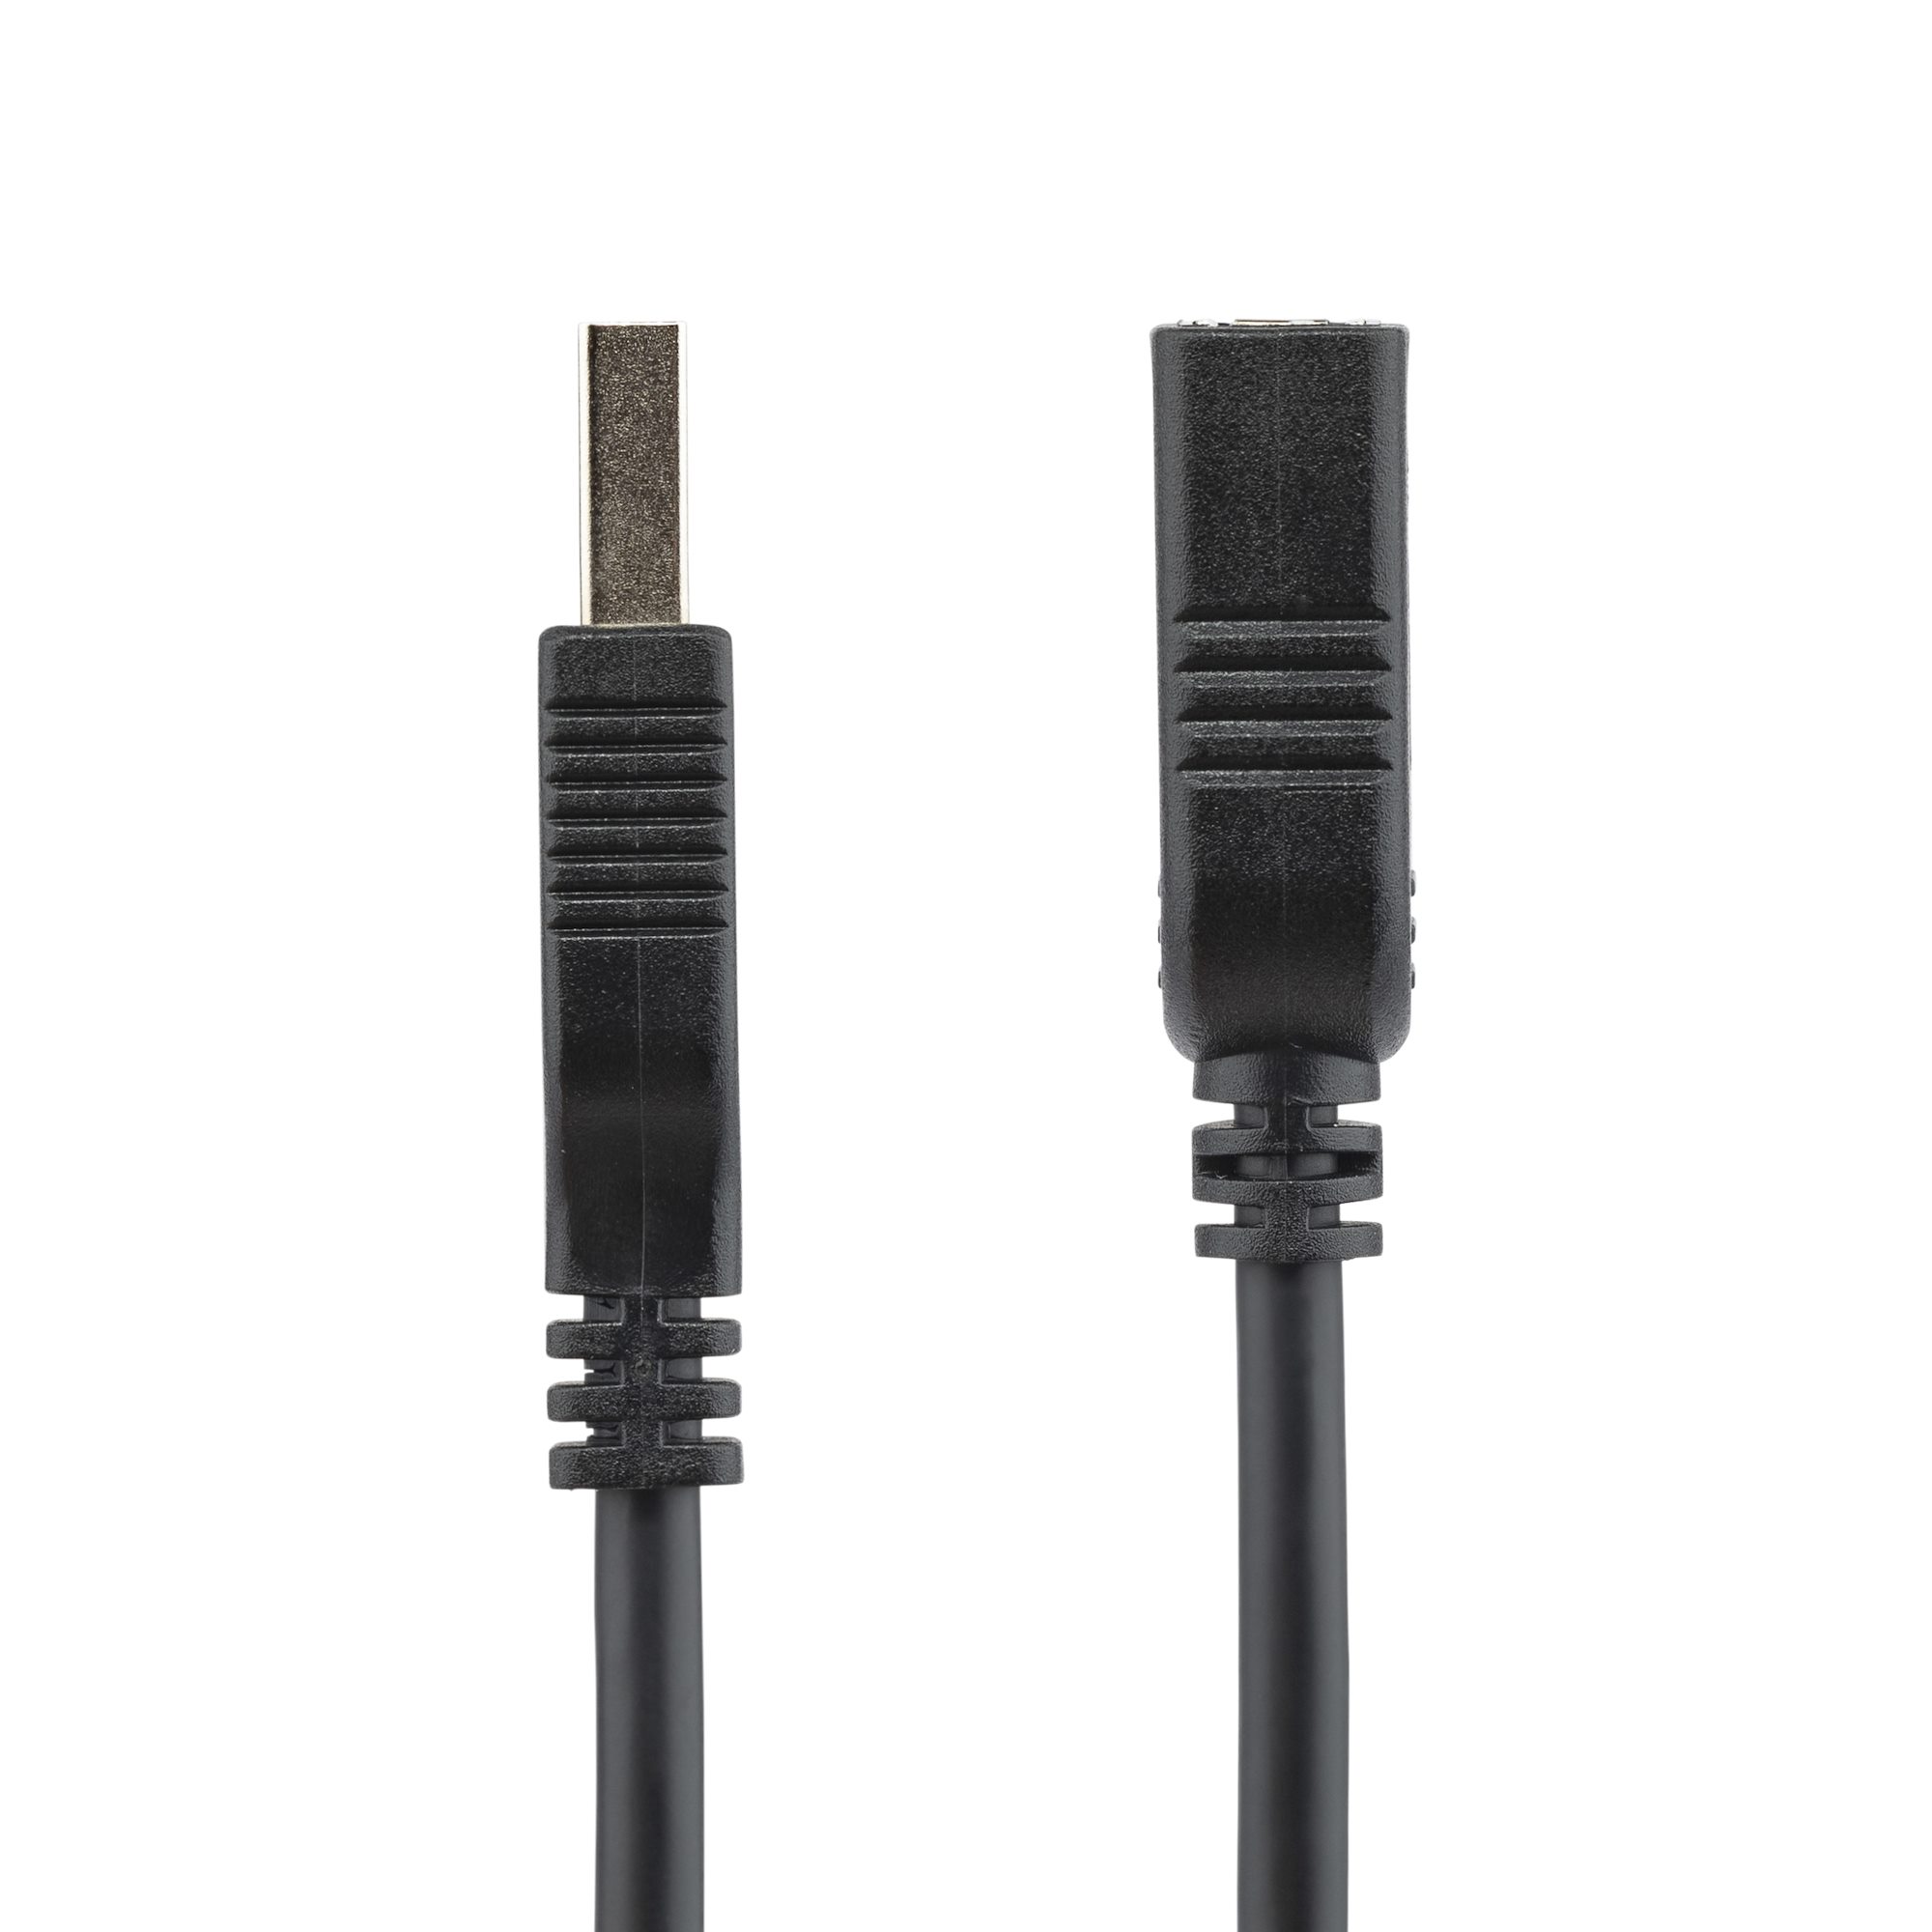 Cable alargador de 15FT para resistente al agua RGB